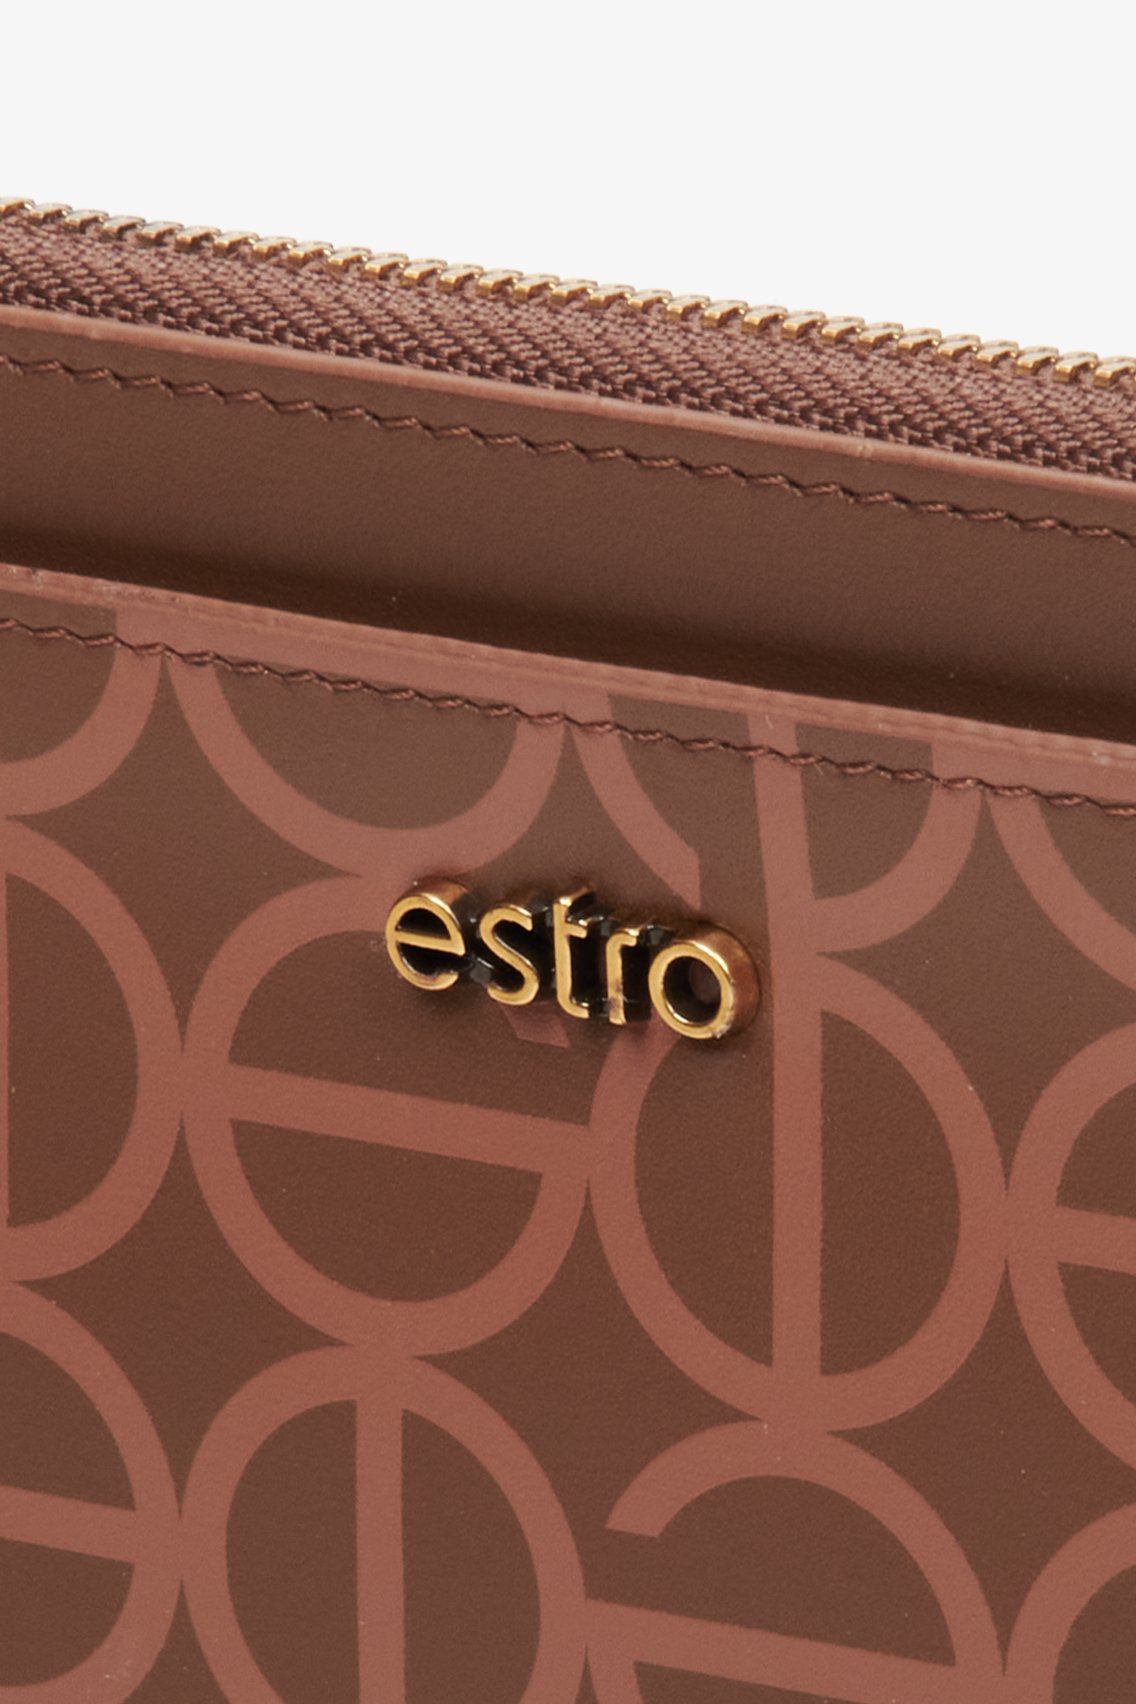 Brązowy, damski, duży portfel damski ze skóry naturalnej Estro - zbliżenie na detale.